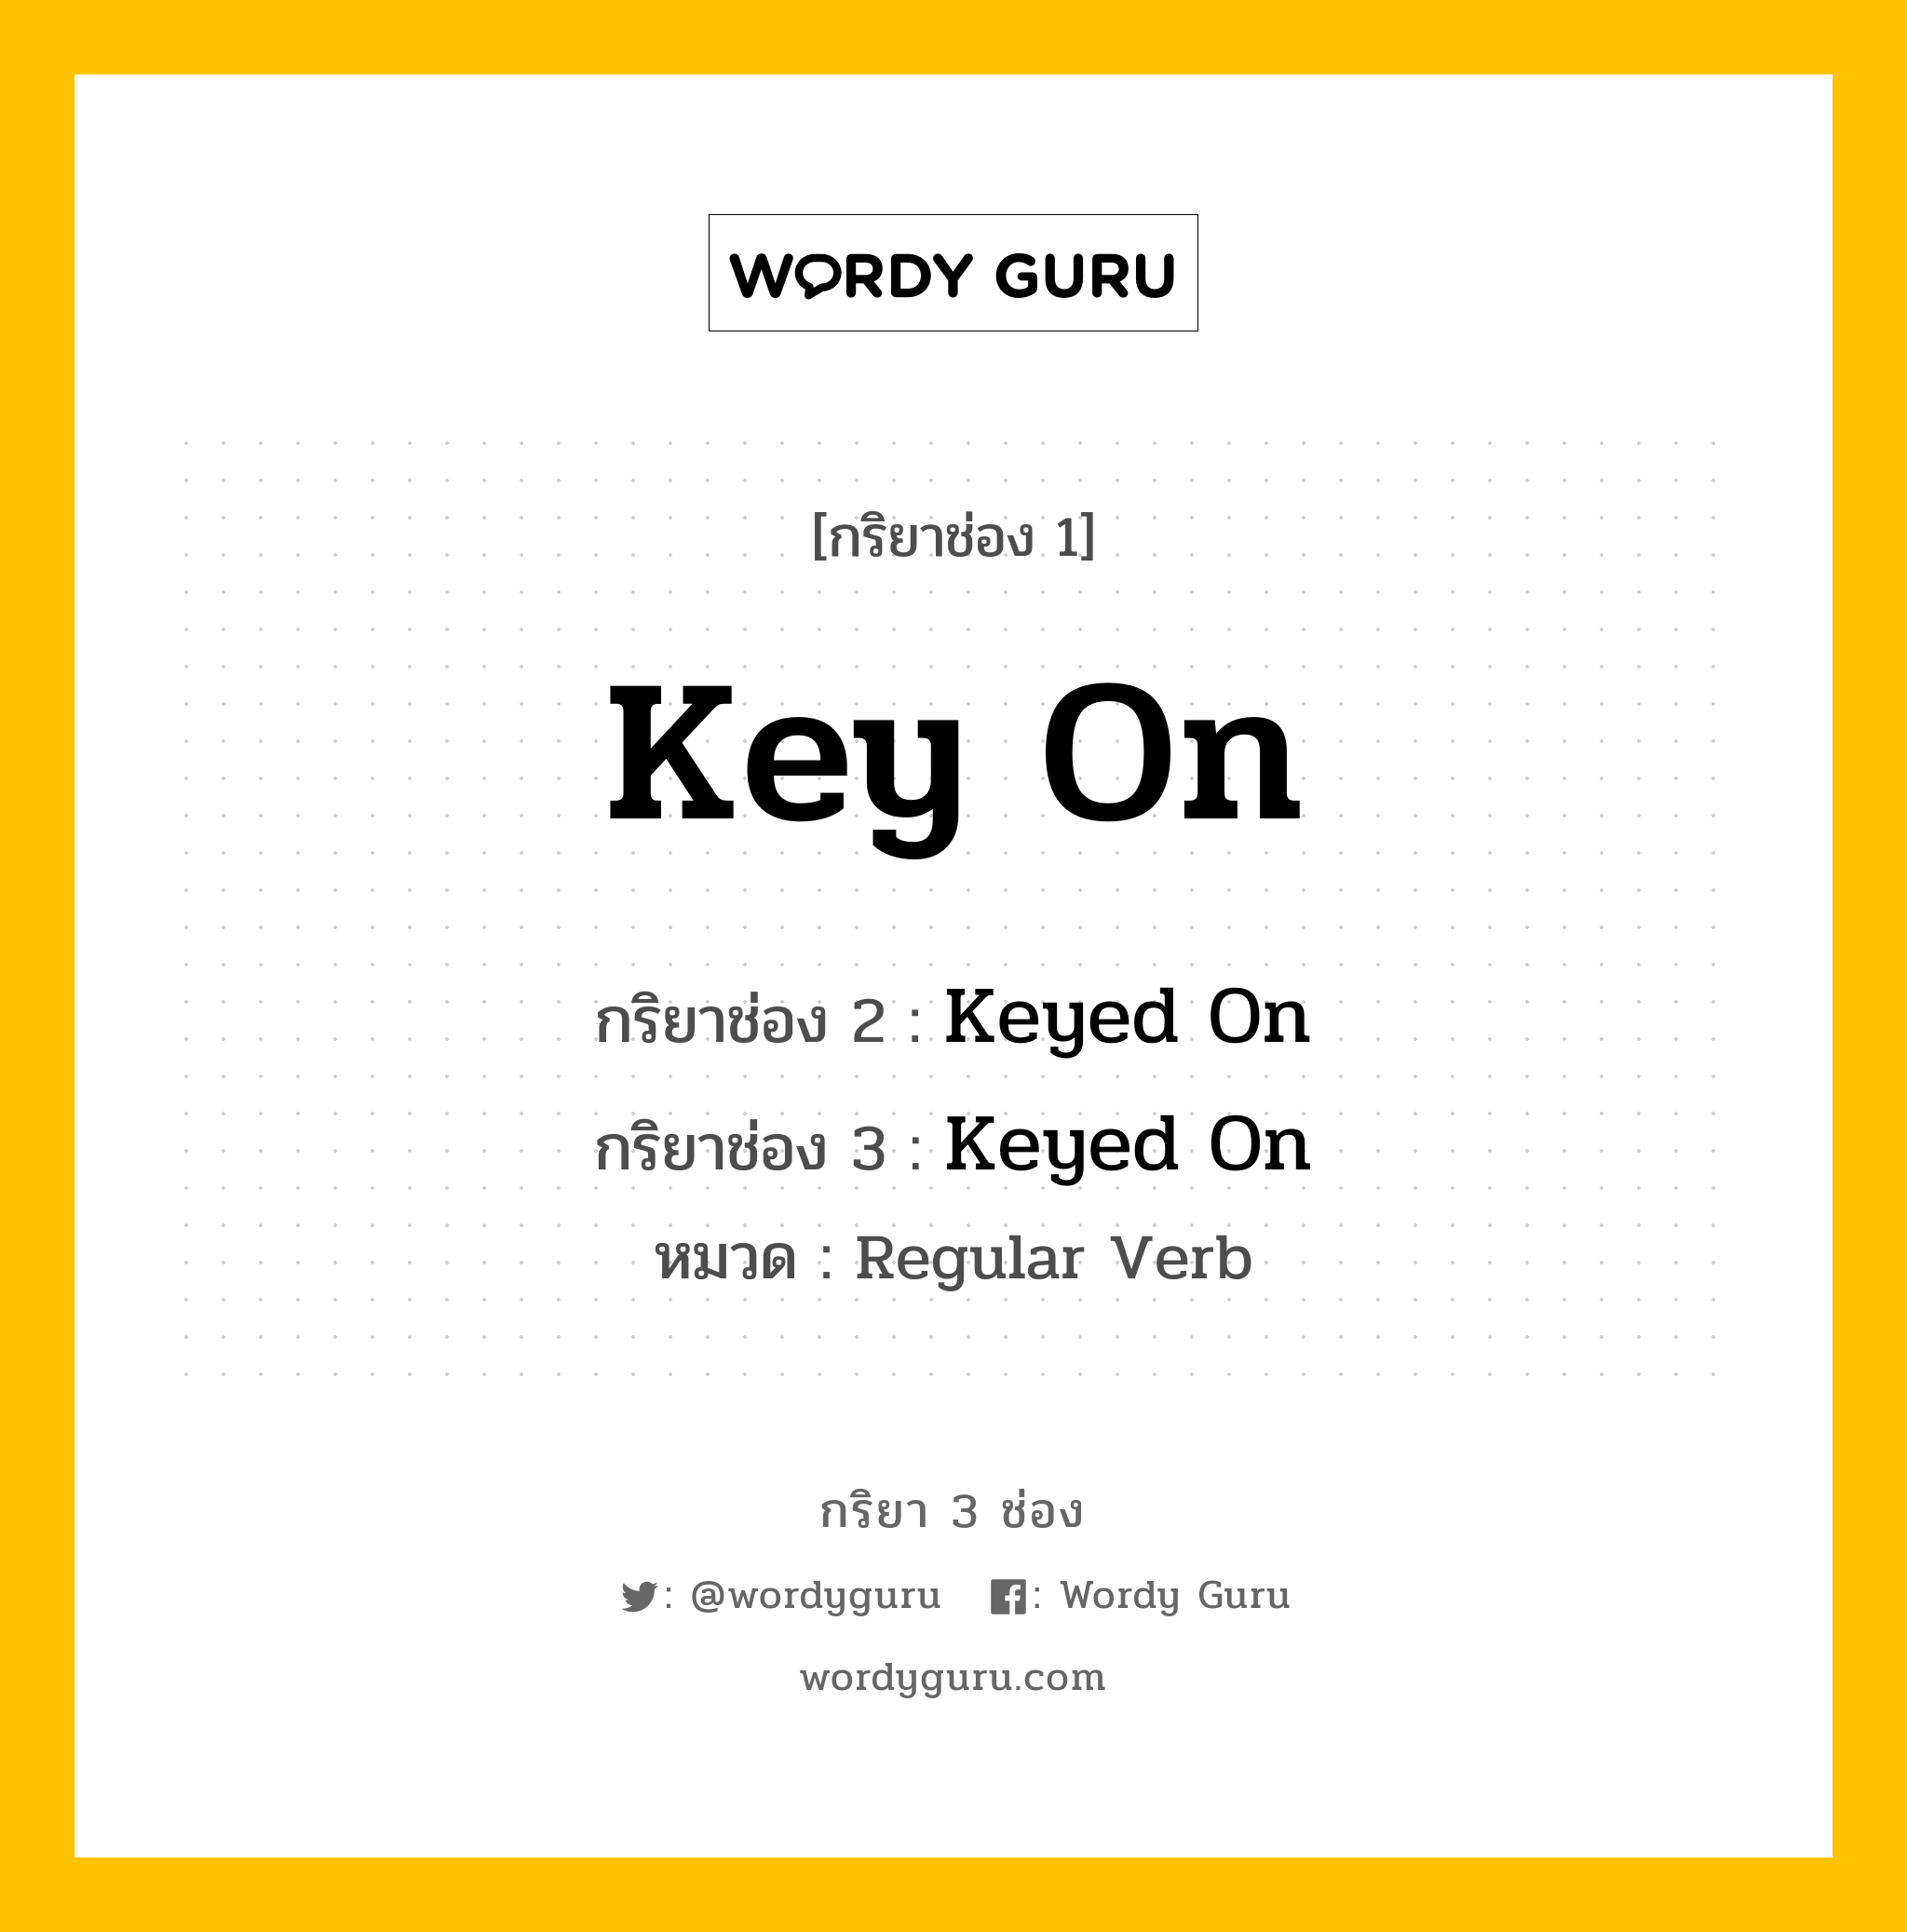 กริยา 3 ช่อง: Key On ช่อง 2 Key On ช่อง 3 คืออะไร, กริยาช่อง 1 Key On กริยาช่อง 2 Keyed On กริยาช่อง 3 Keyed On หมวด Regular Verb หมวด Regular Verb